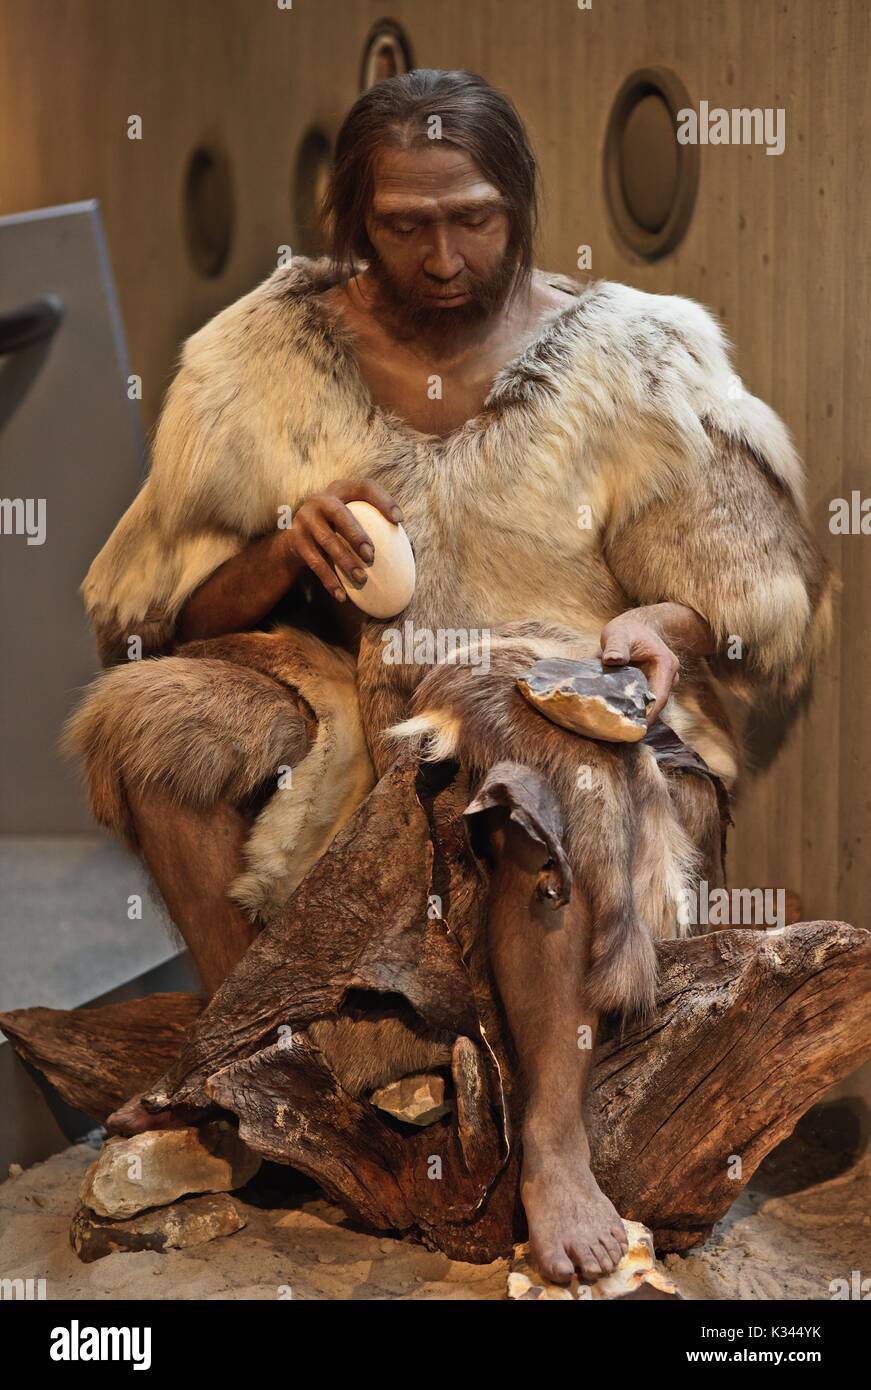 El hombre de Neandertal trabaja con piedras, chipping fuera de flechas y cuchillos Foto de stock